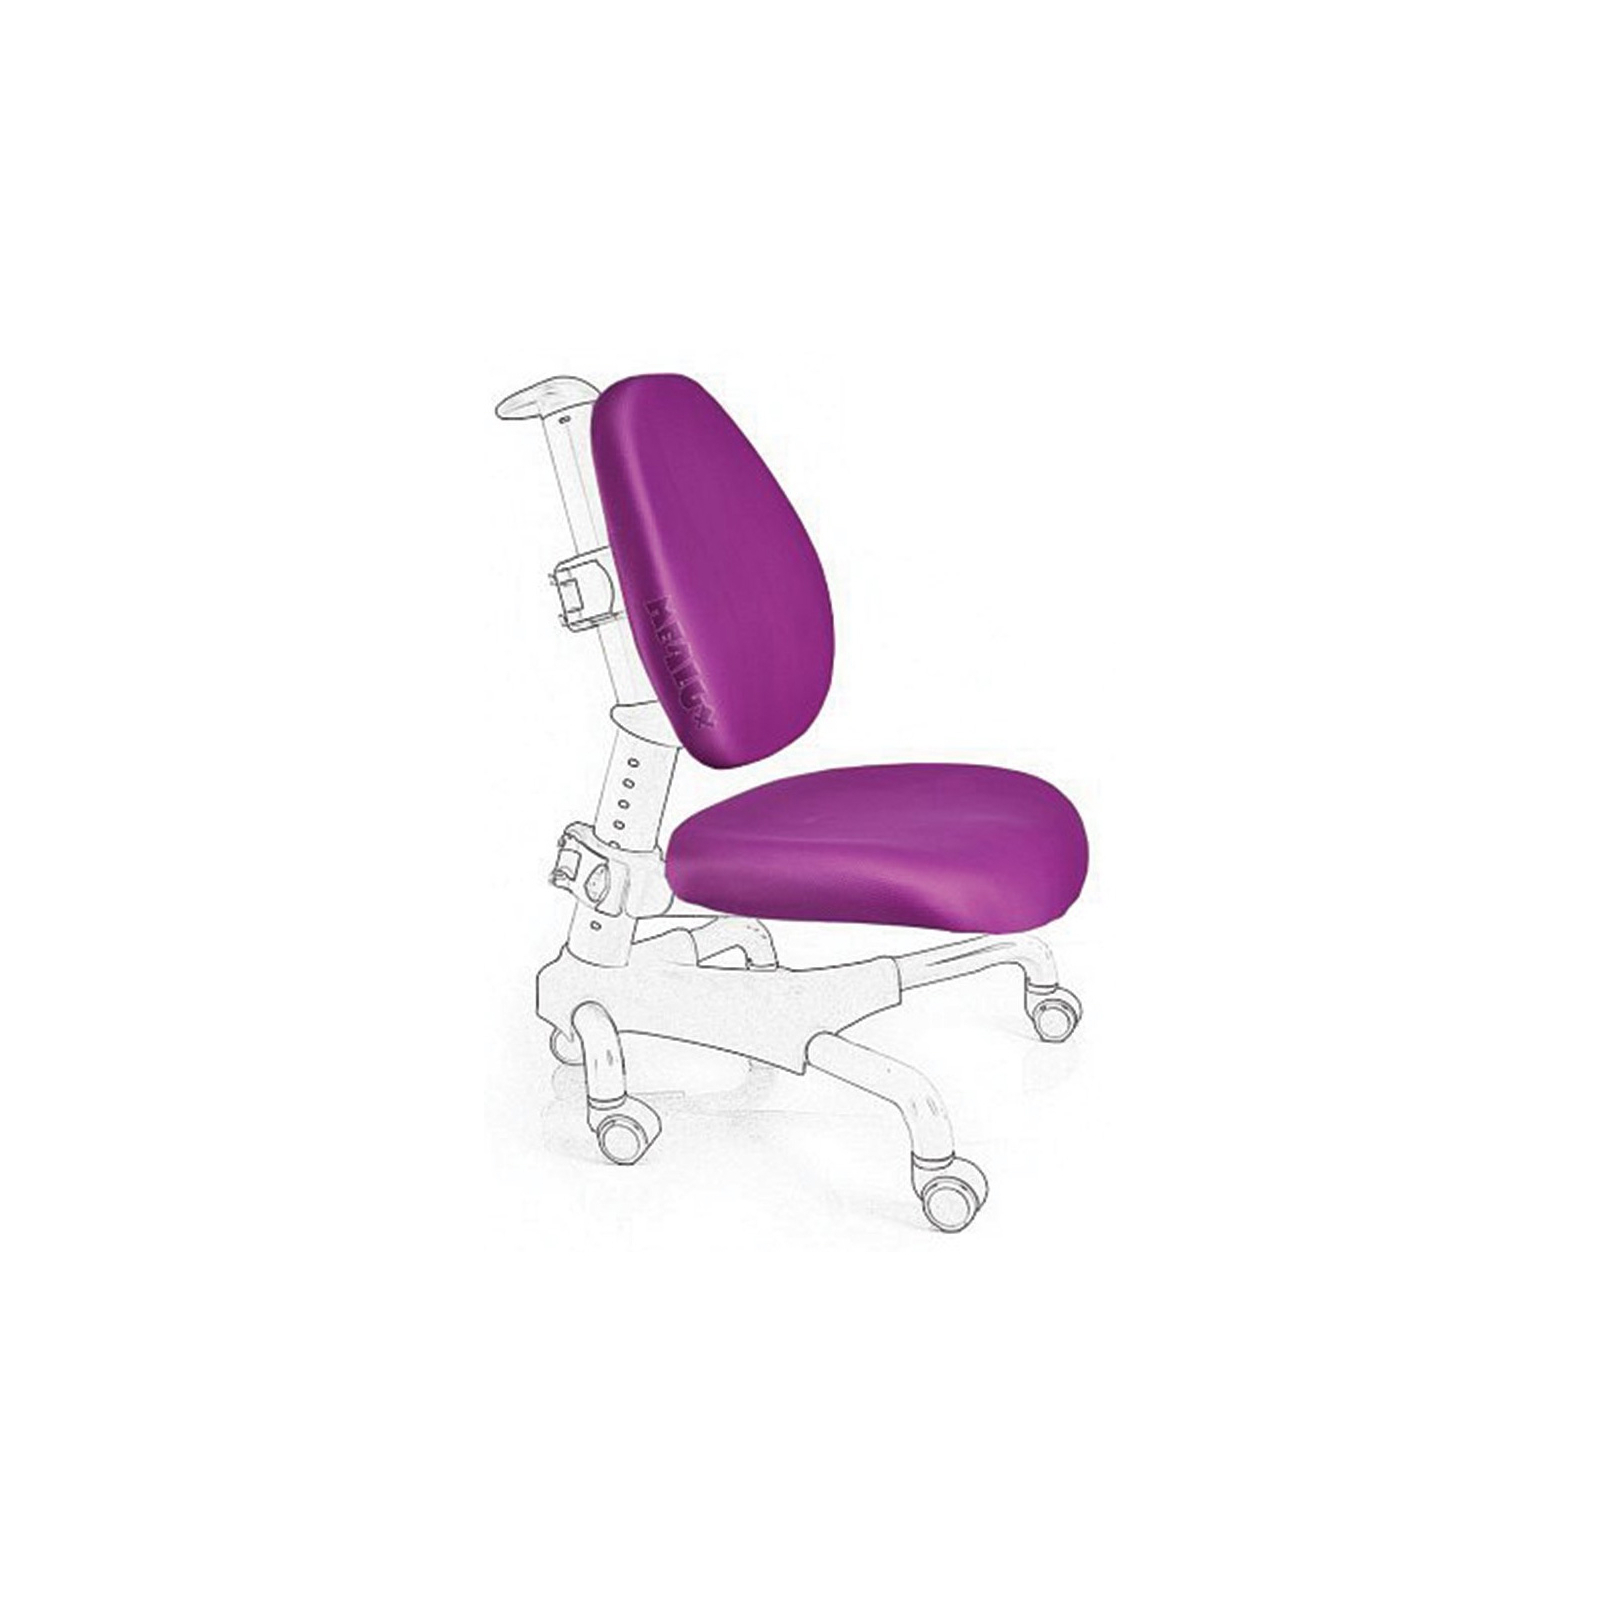 Чохол для крісла Mealux Nobel, Champion фіолетовий (Чехол KS (Y-517, 718))